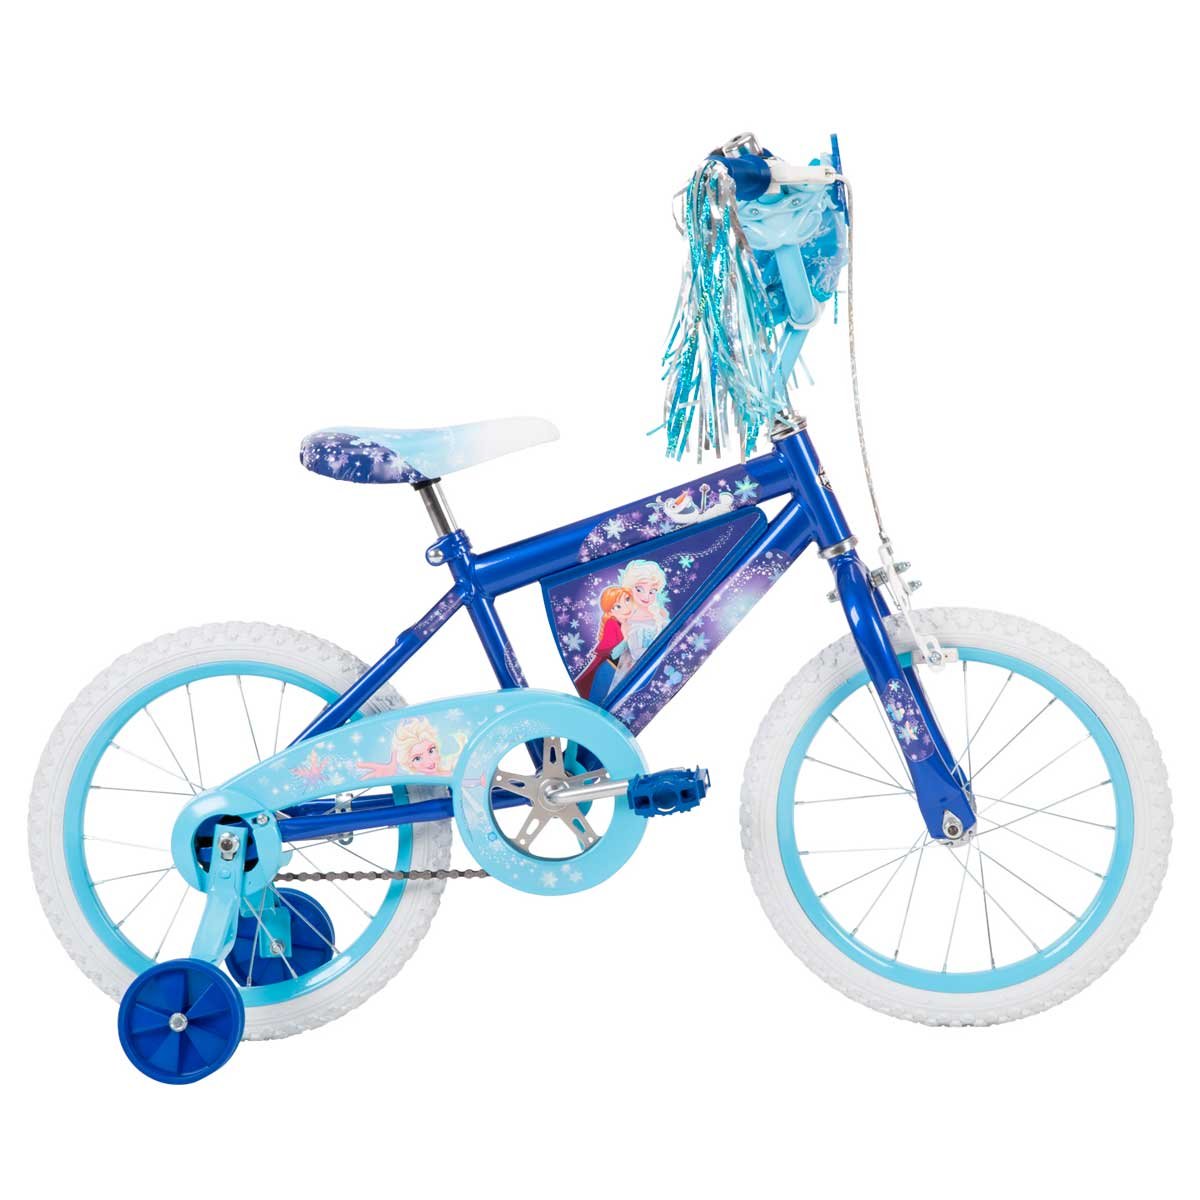 Bicicleta Niña 16 Pulgadas Snow Queen 5-7 Años - Azul